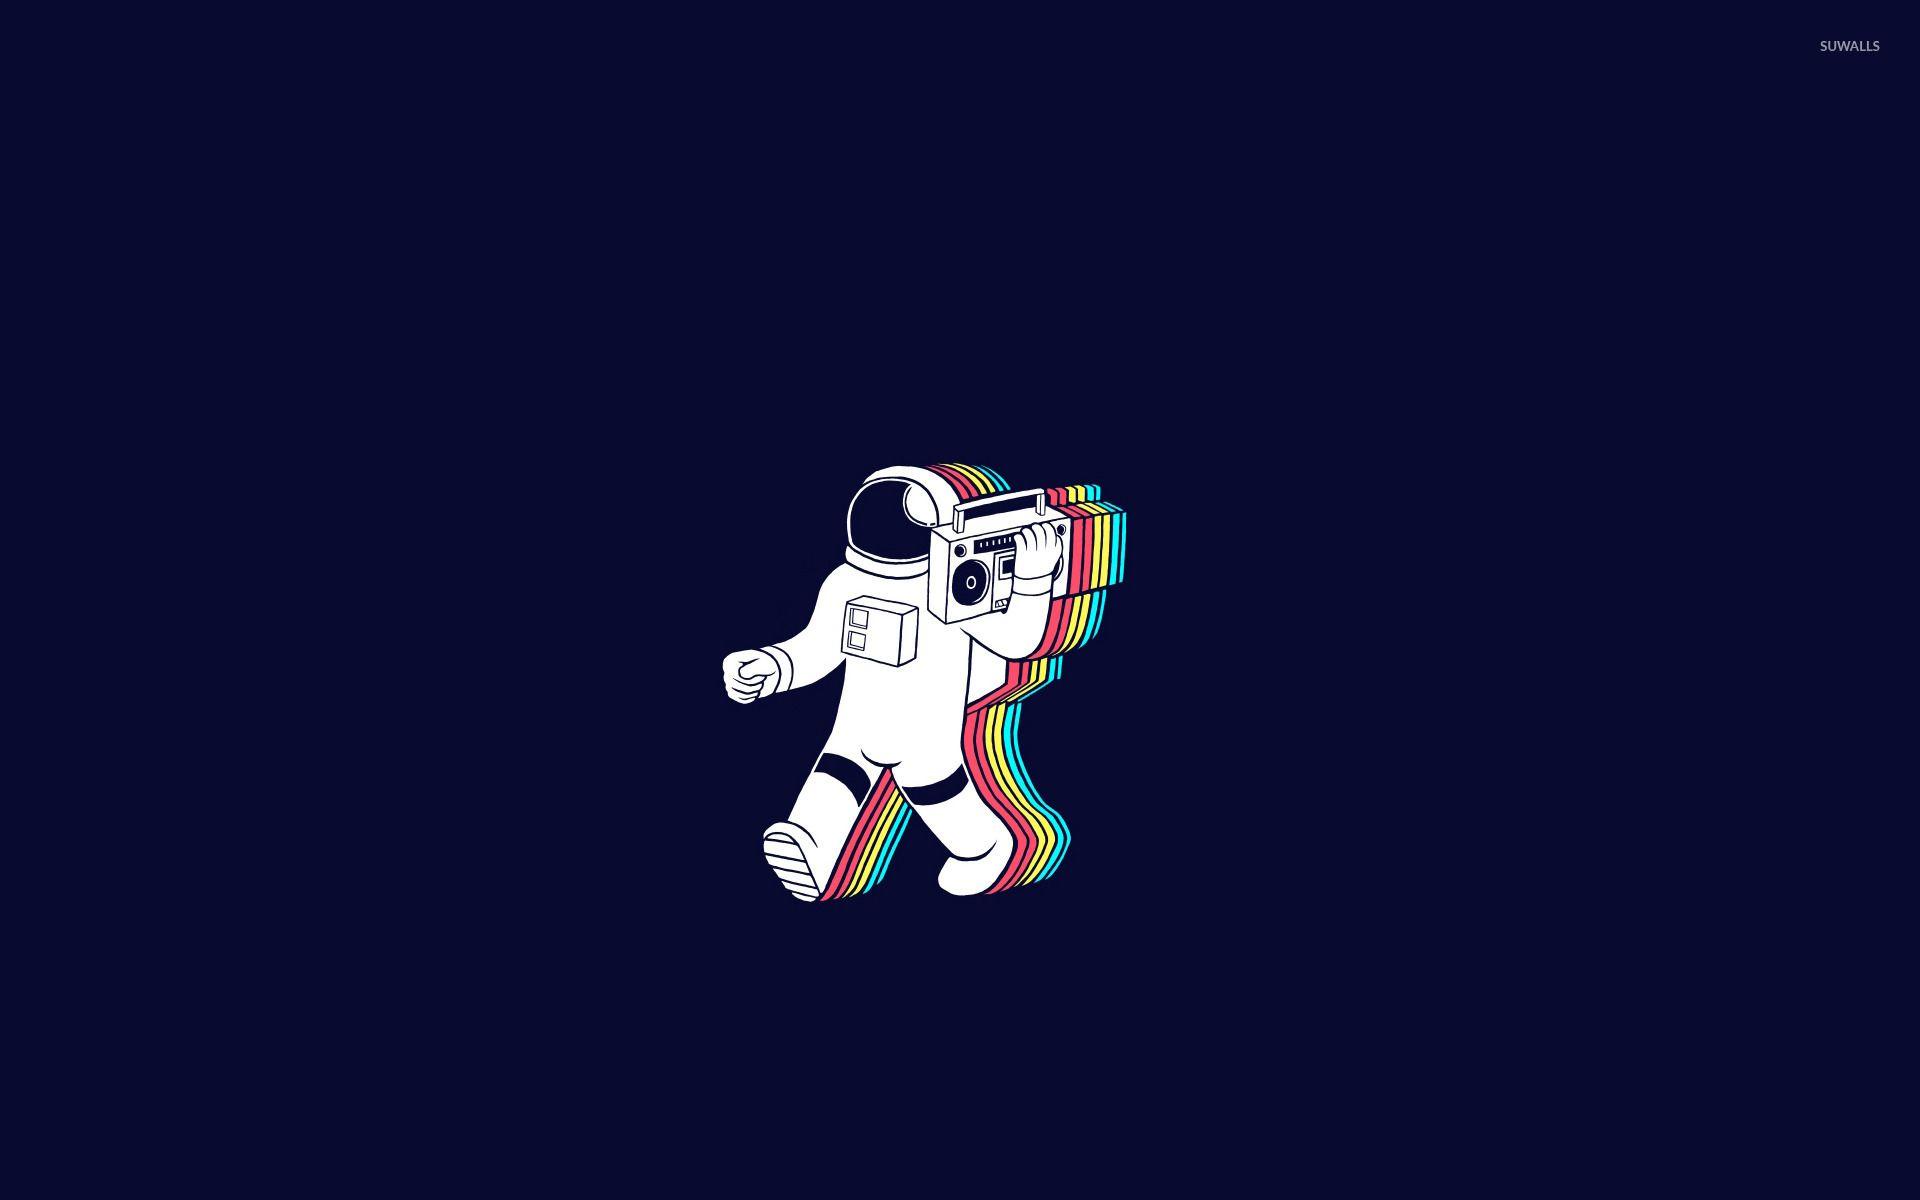 Astronaut Wallpaper HD Resolution. Astronaut wallpaper, Desktop